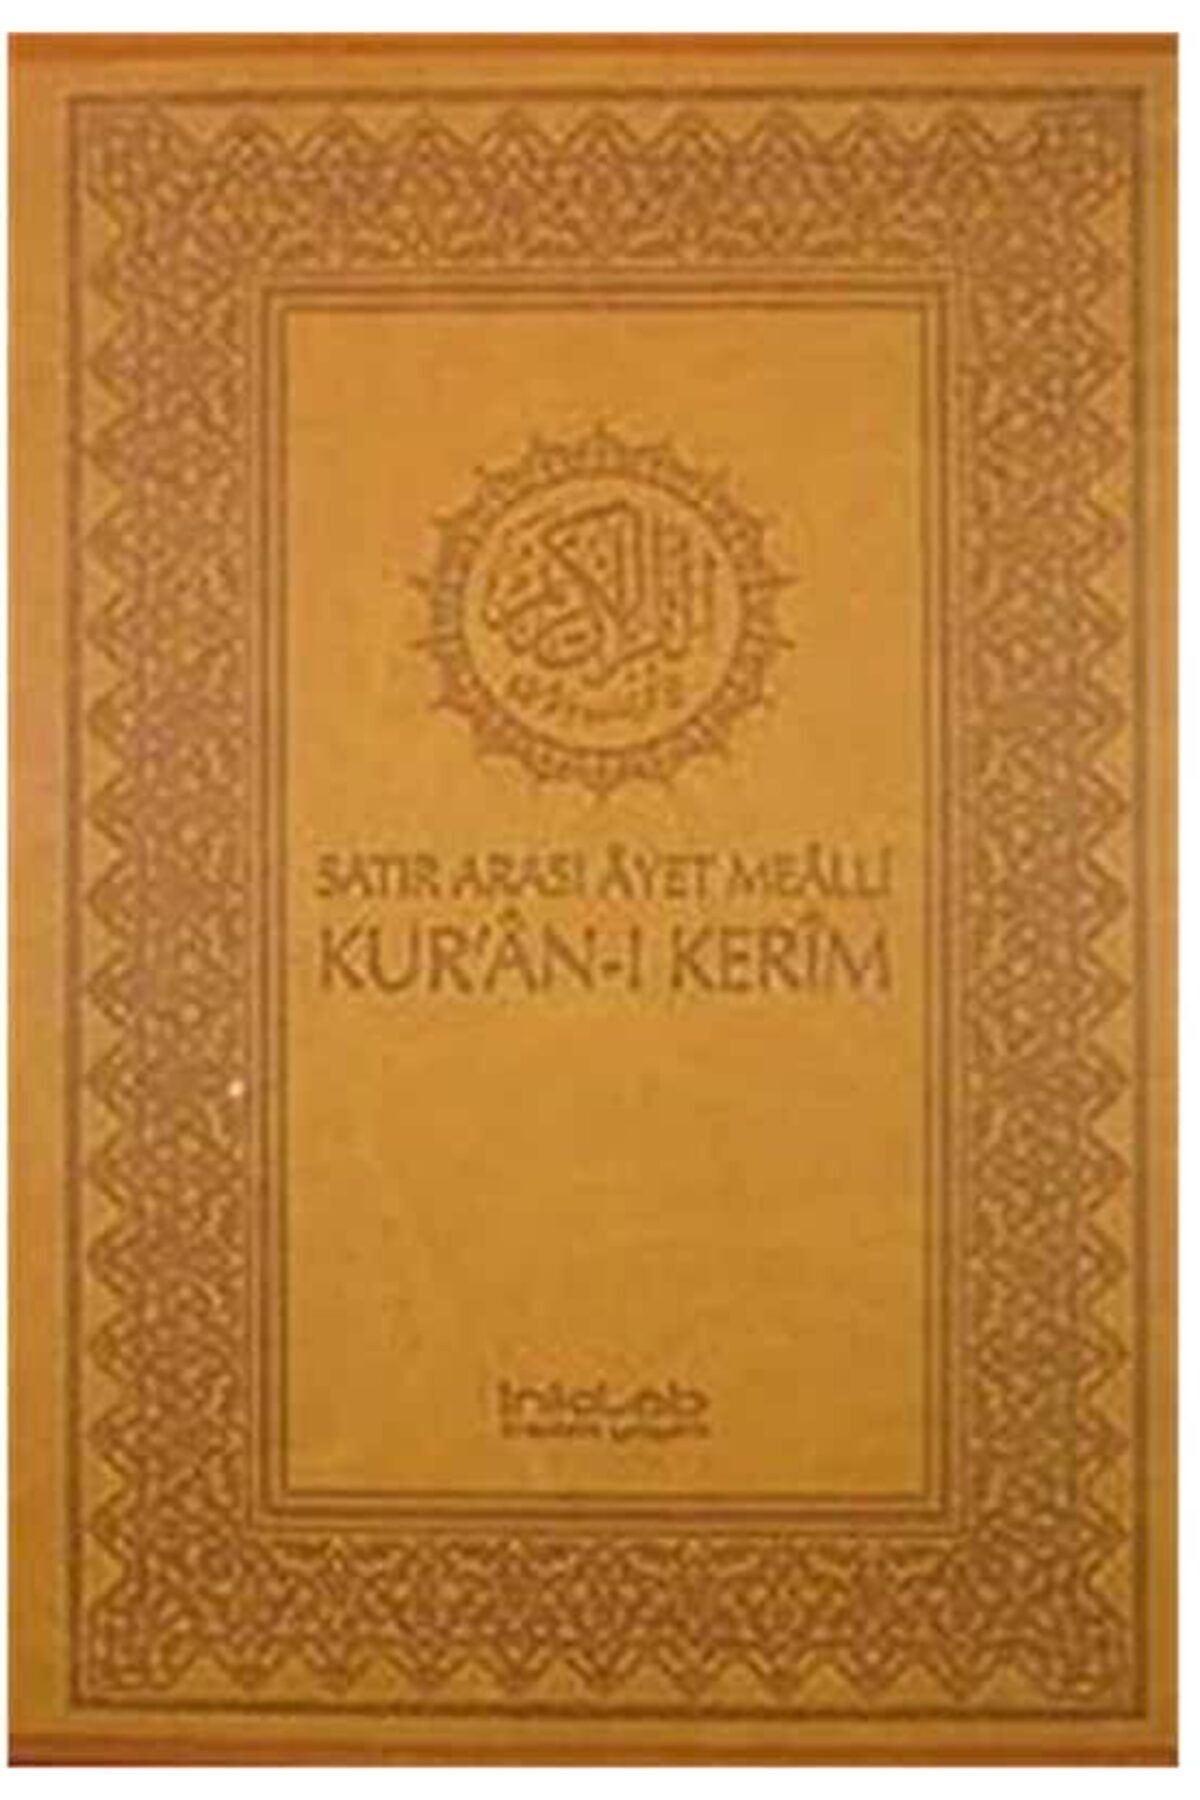 İnkılap Kitabevi Satır Arası Ayet Mealli Kur'an-ı Kerim (kutulu)